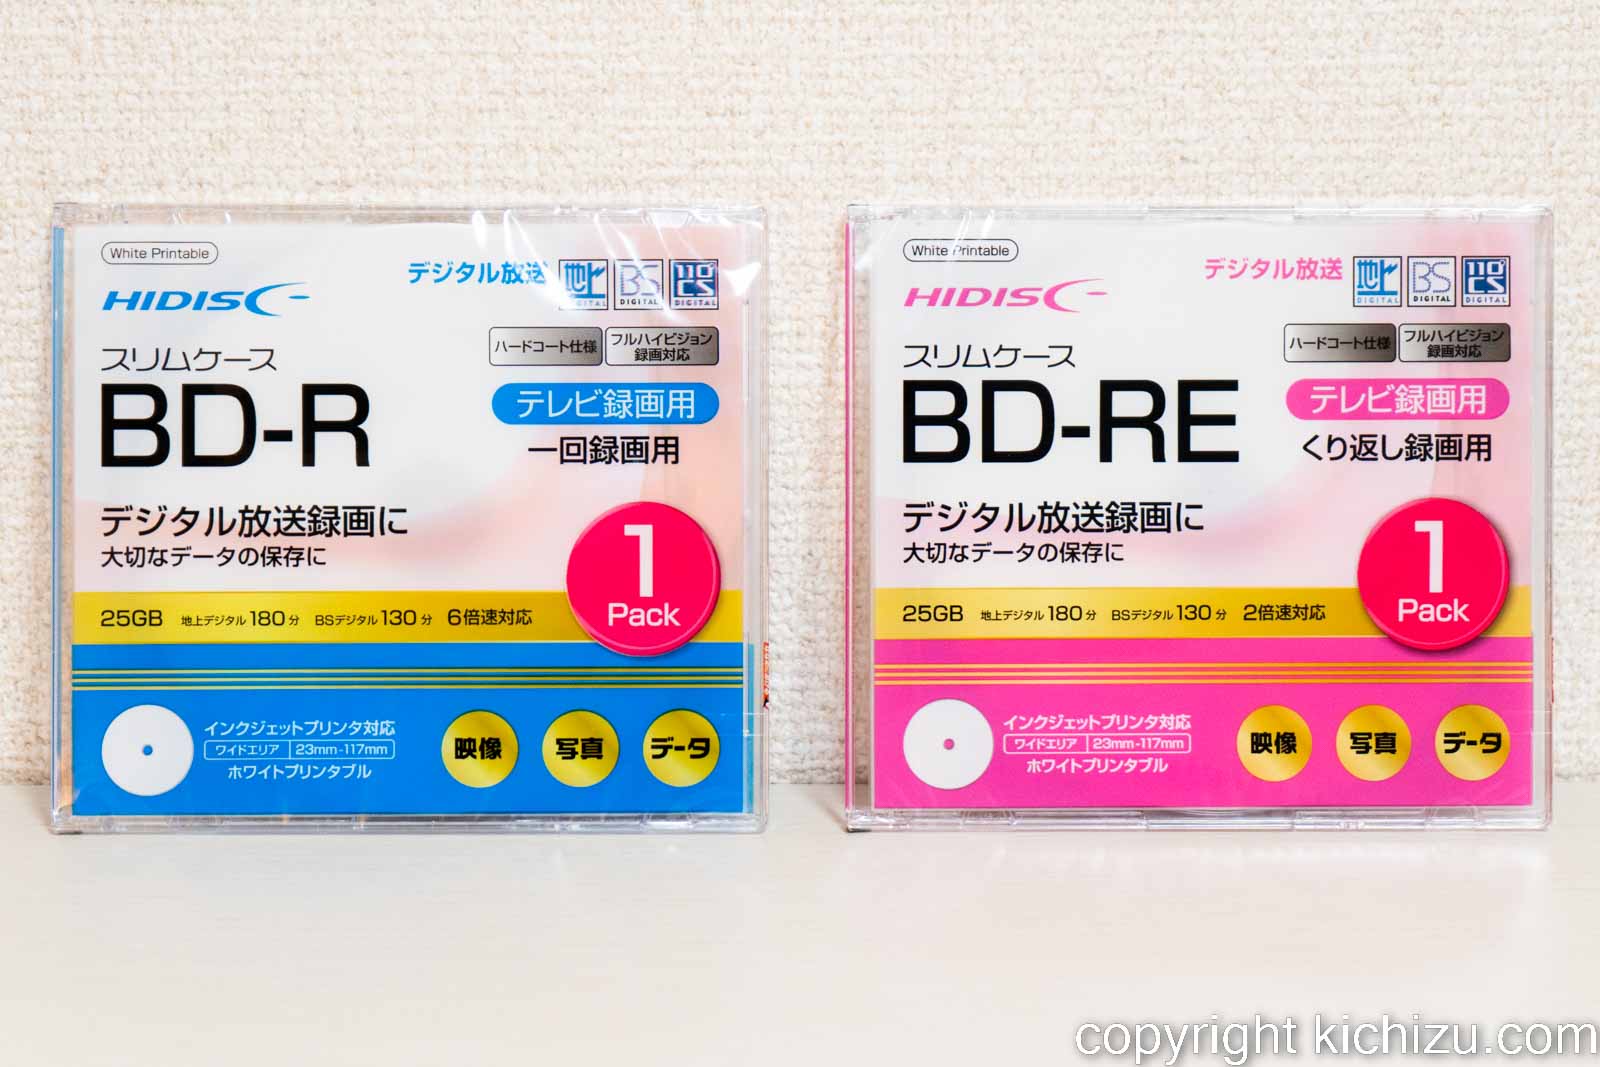 100均 ダイソー・セリア「BD-R/BD-RE/BD-R2層 50GB」ブルーレイディスク全品購入レビュー Kichzu's